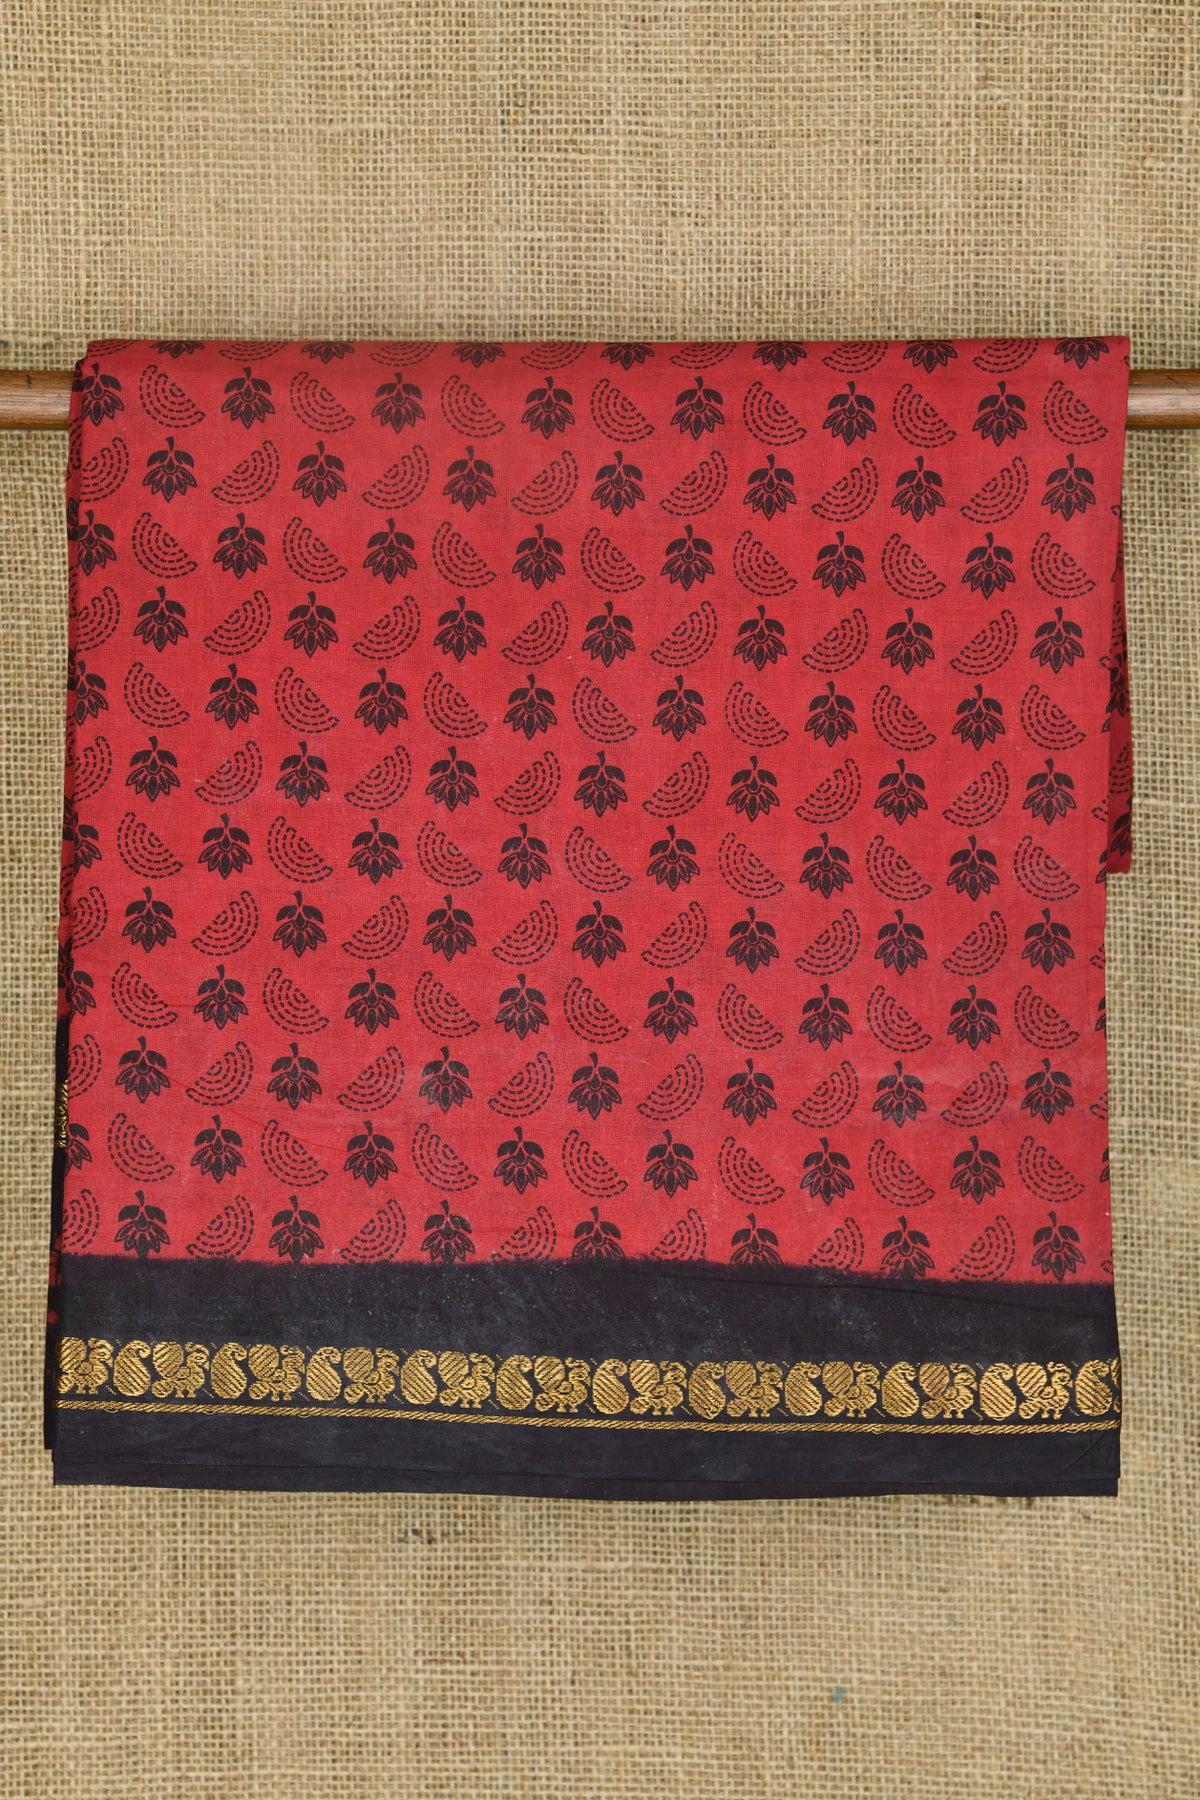 Contrast Zari Paisley Border With Small Floral Buttis Body Crimson Red Sungudi Cotton Saree